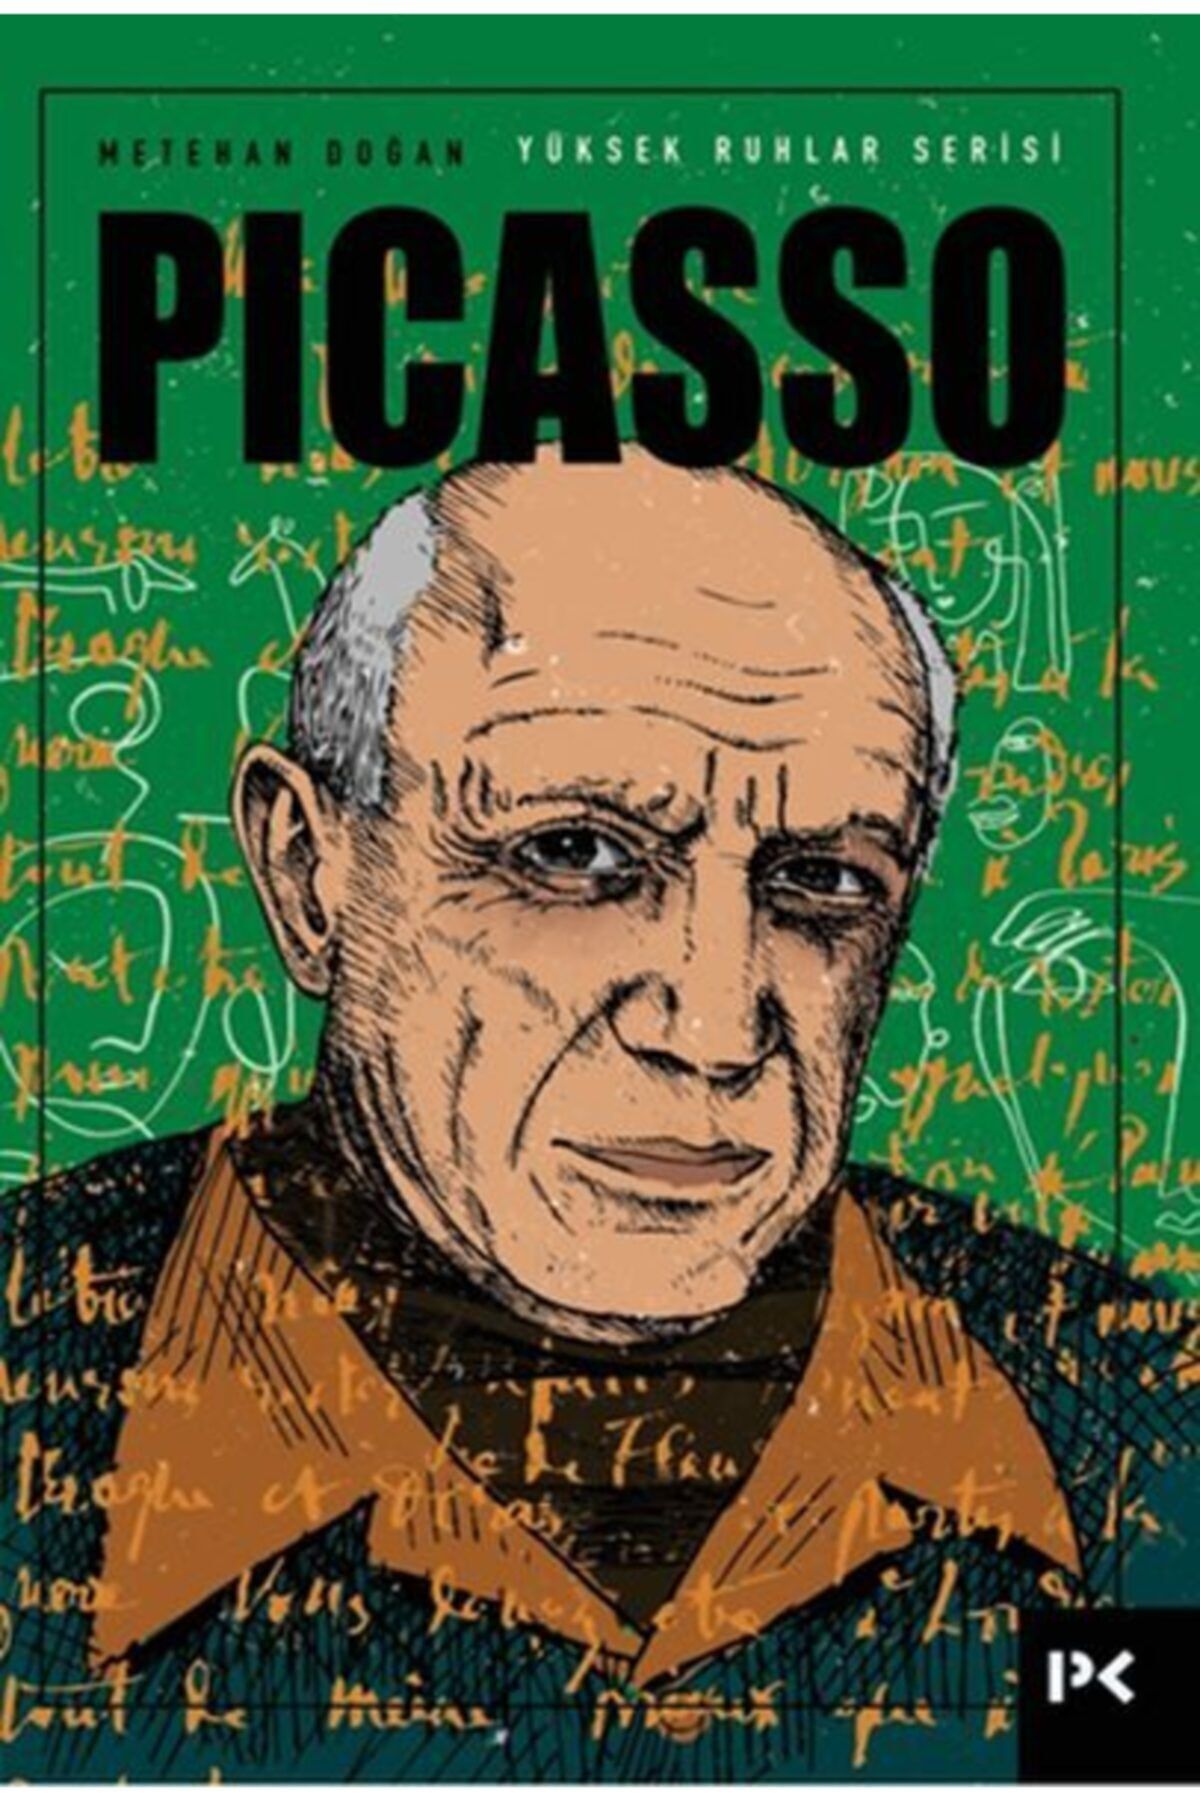 Profil Kitap Yüksek Ruhlar Serisi: Picasso